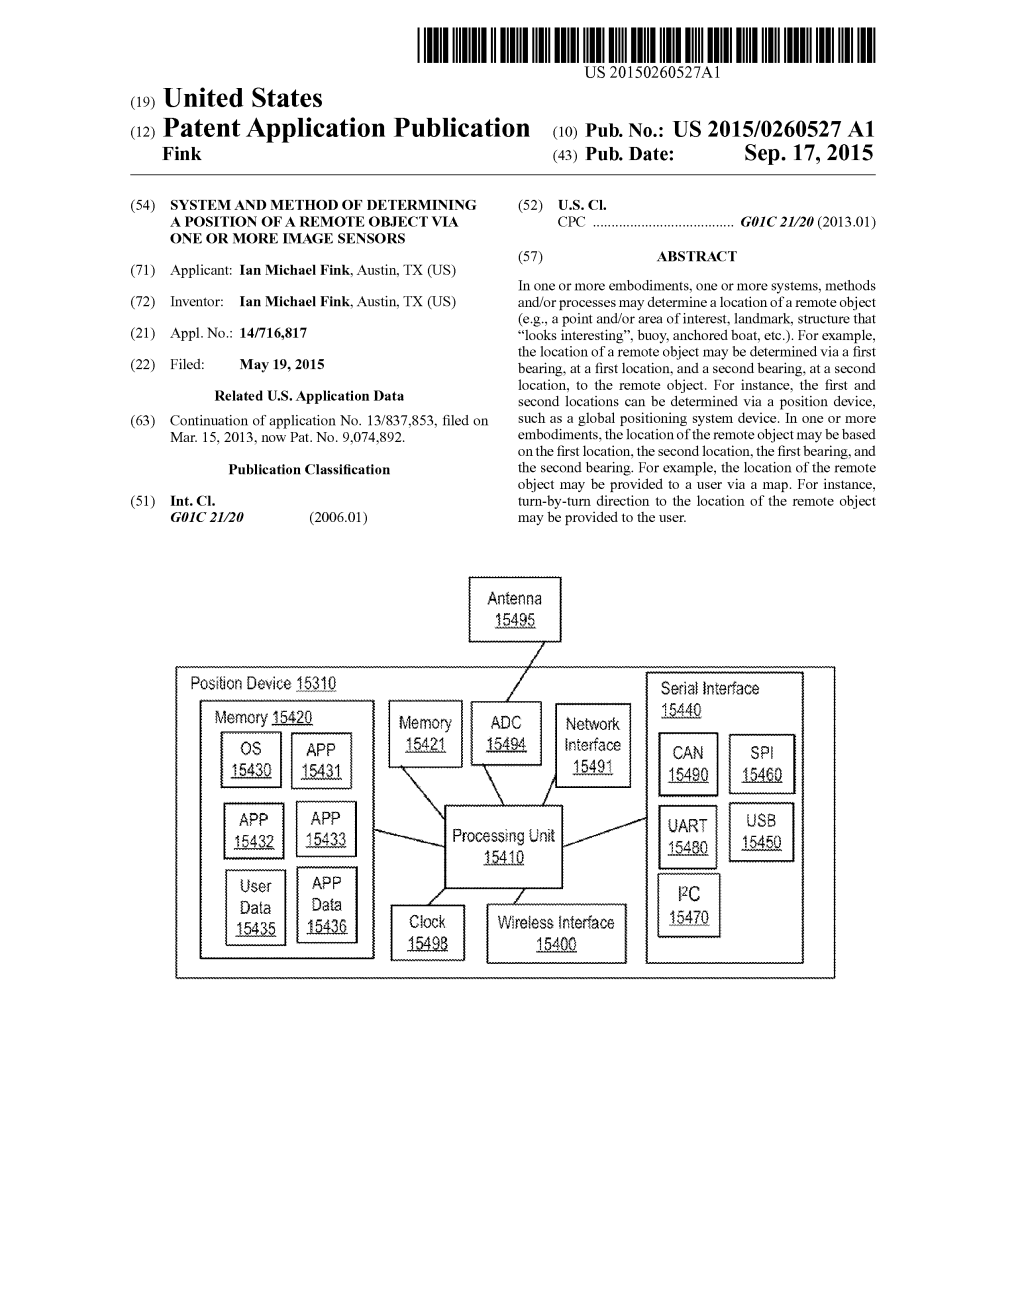 (12) Patent Application Publication (10) Pub. No.: US 2015/0260527 A1 Fink (43) Pub